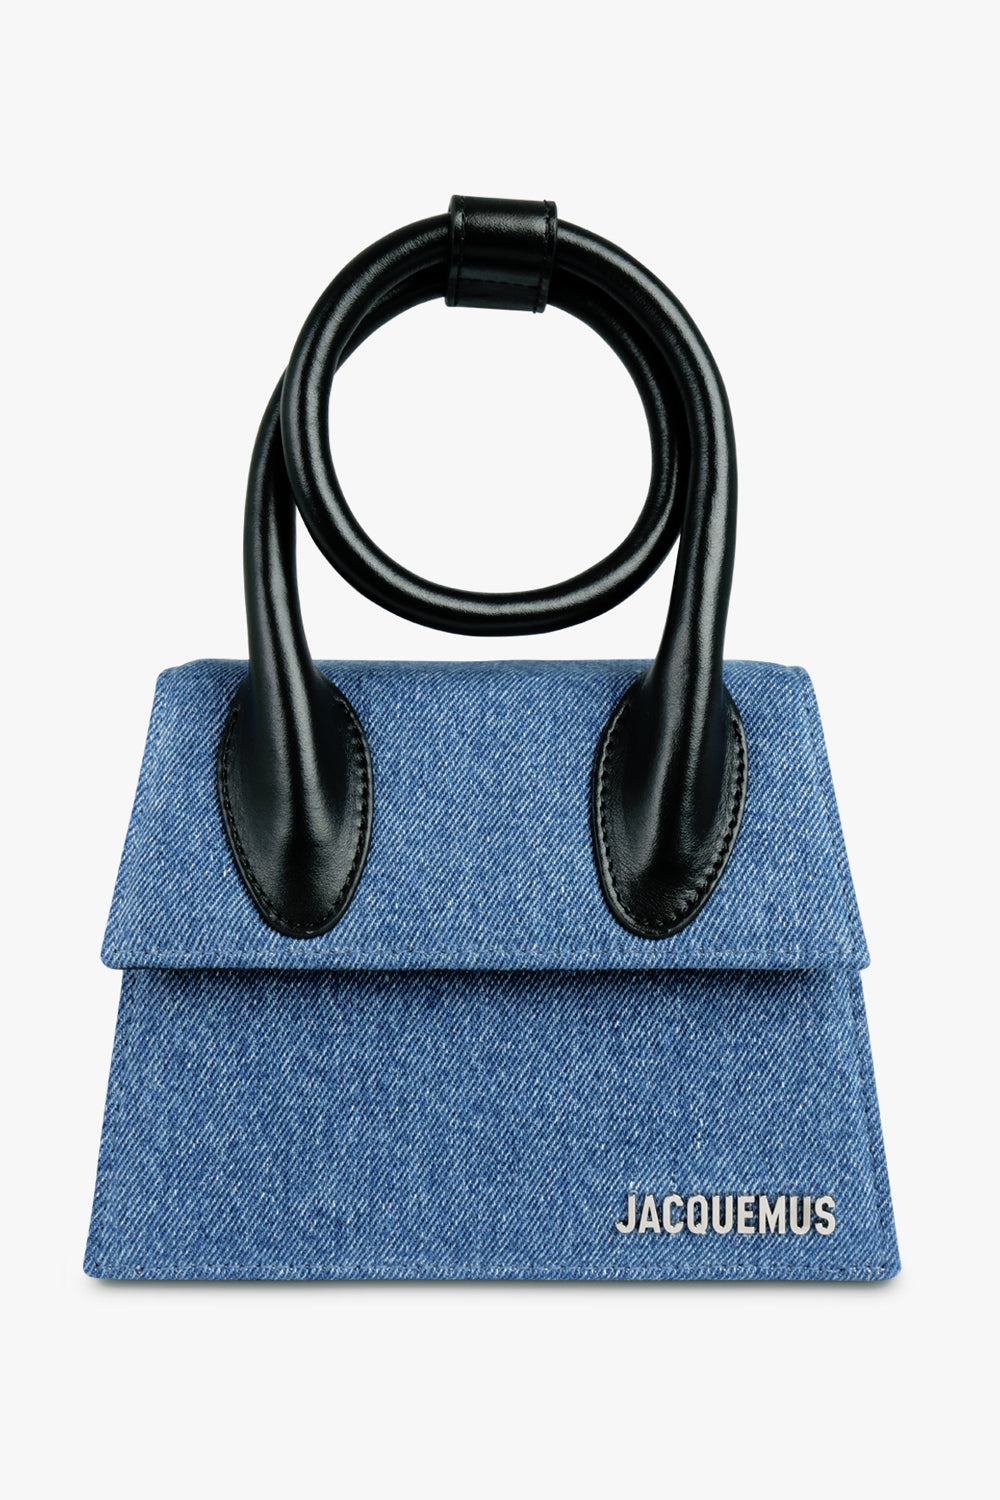 JACQUEMUS BAGS BLUE / BLUE / ONE SIZE Le Chiquito Noeud | Denim Blue